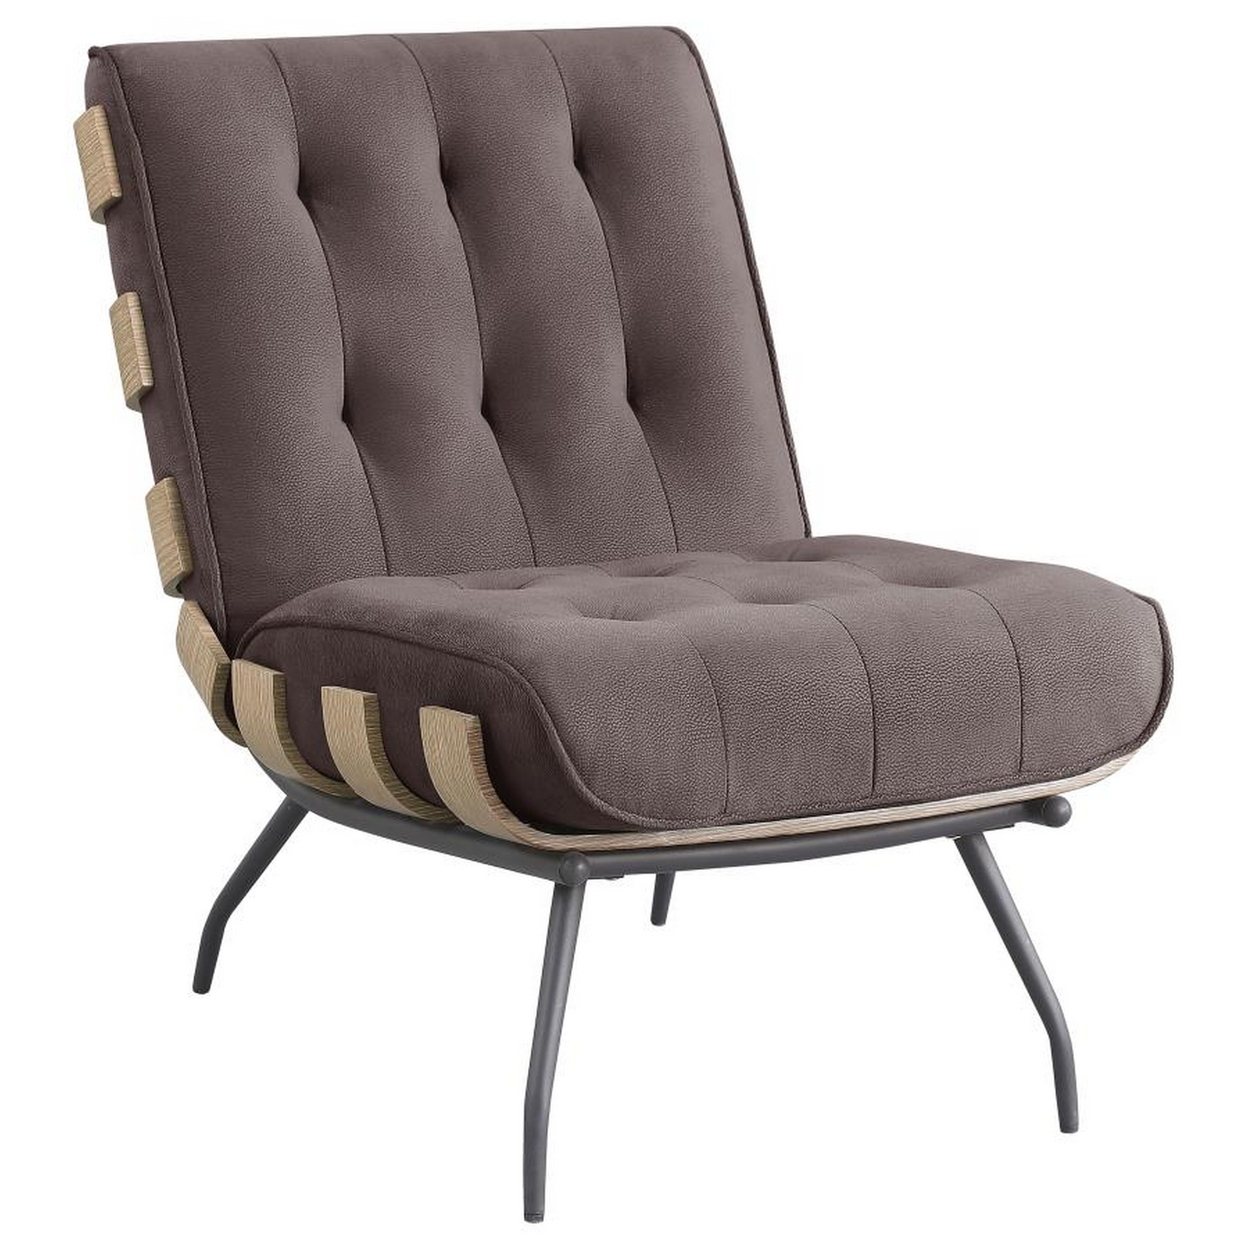 Nain 35 Inch Accent Chair, Oversized Cushion Tufted Back, Dark Brown -Saltoro Sherpi